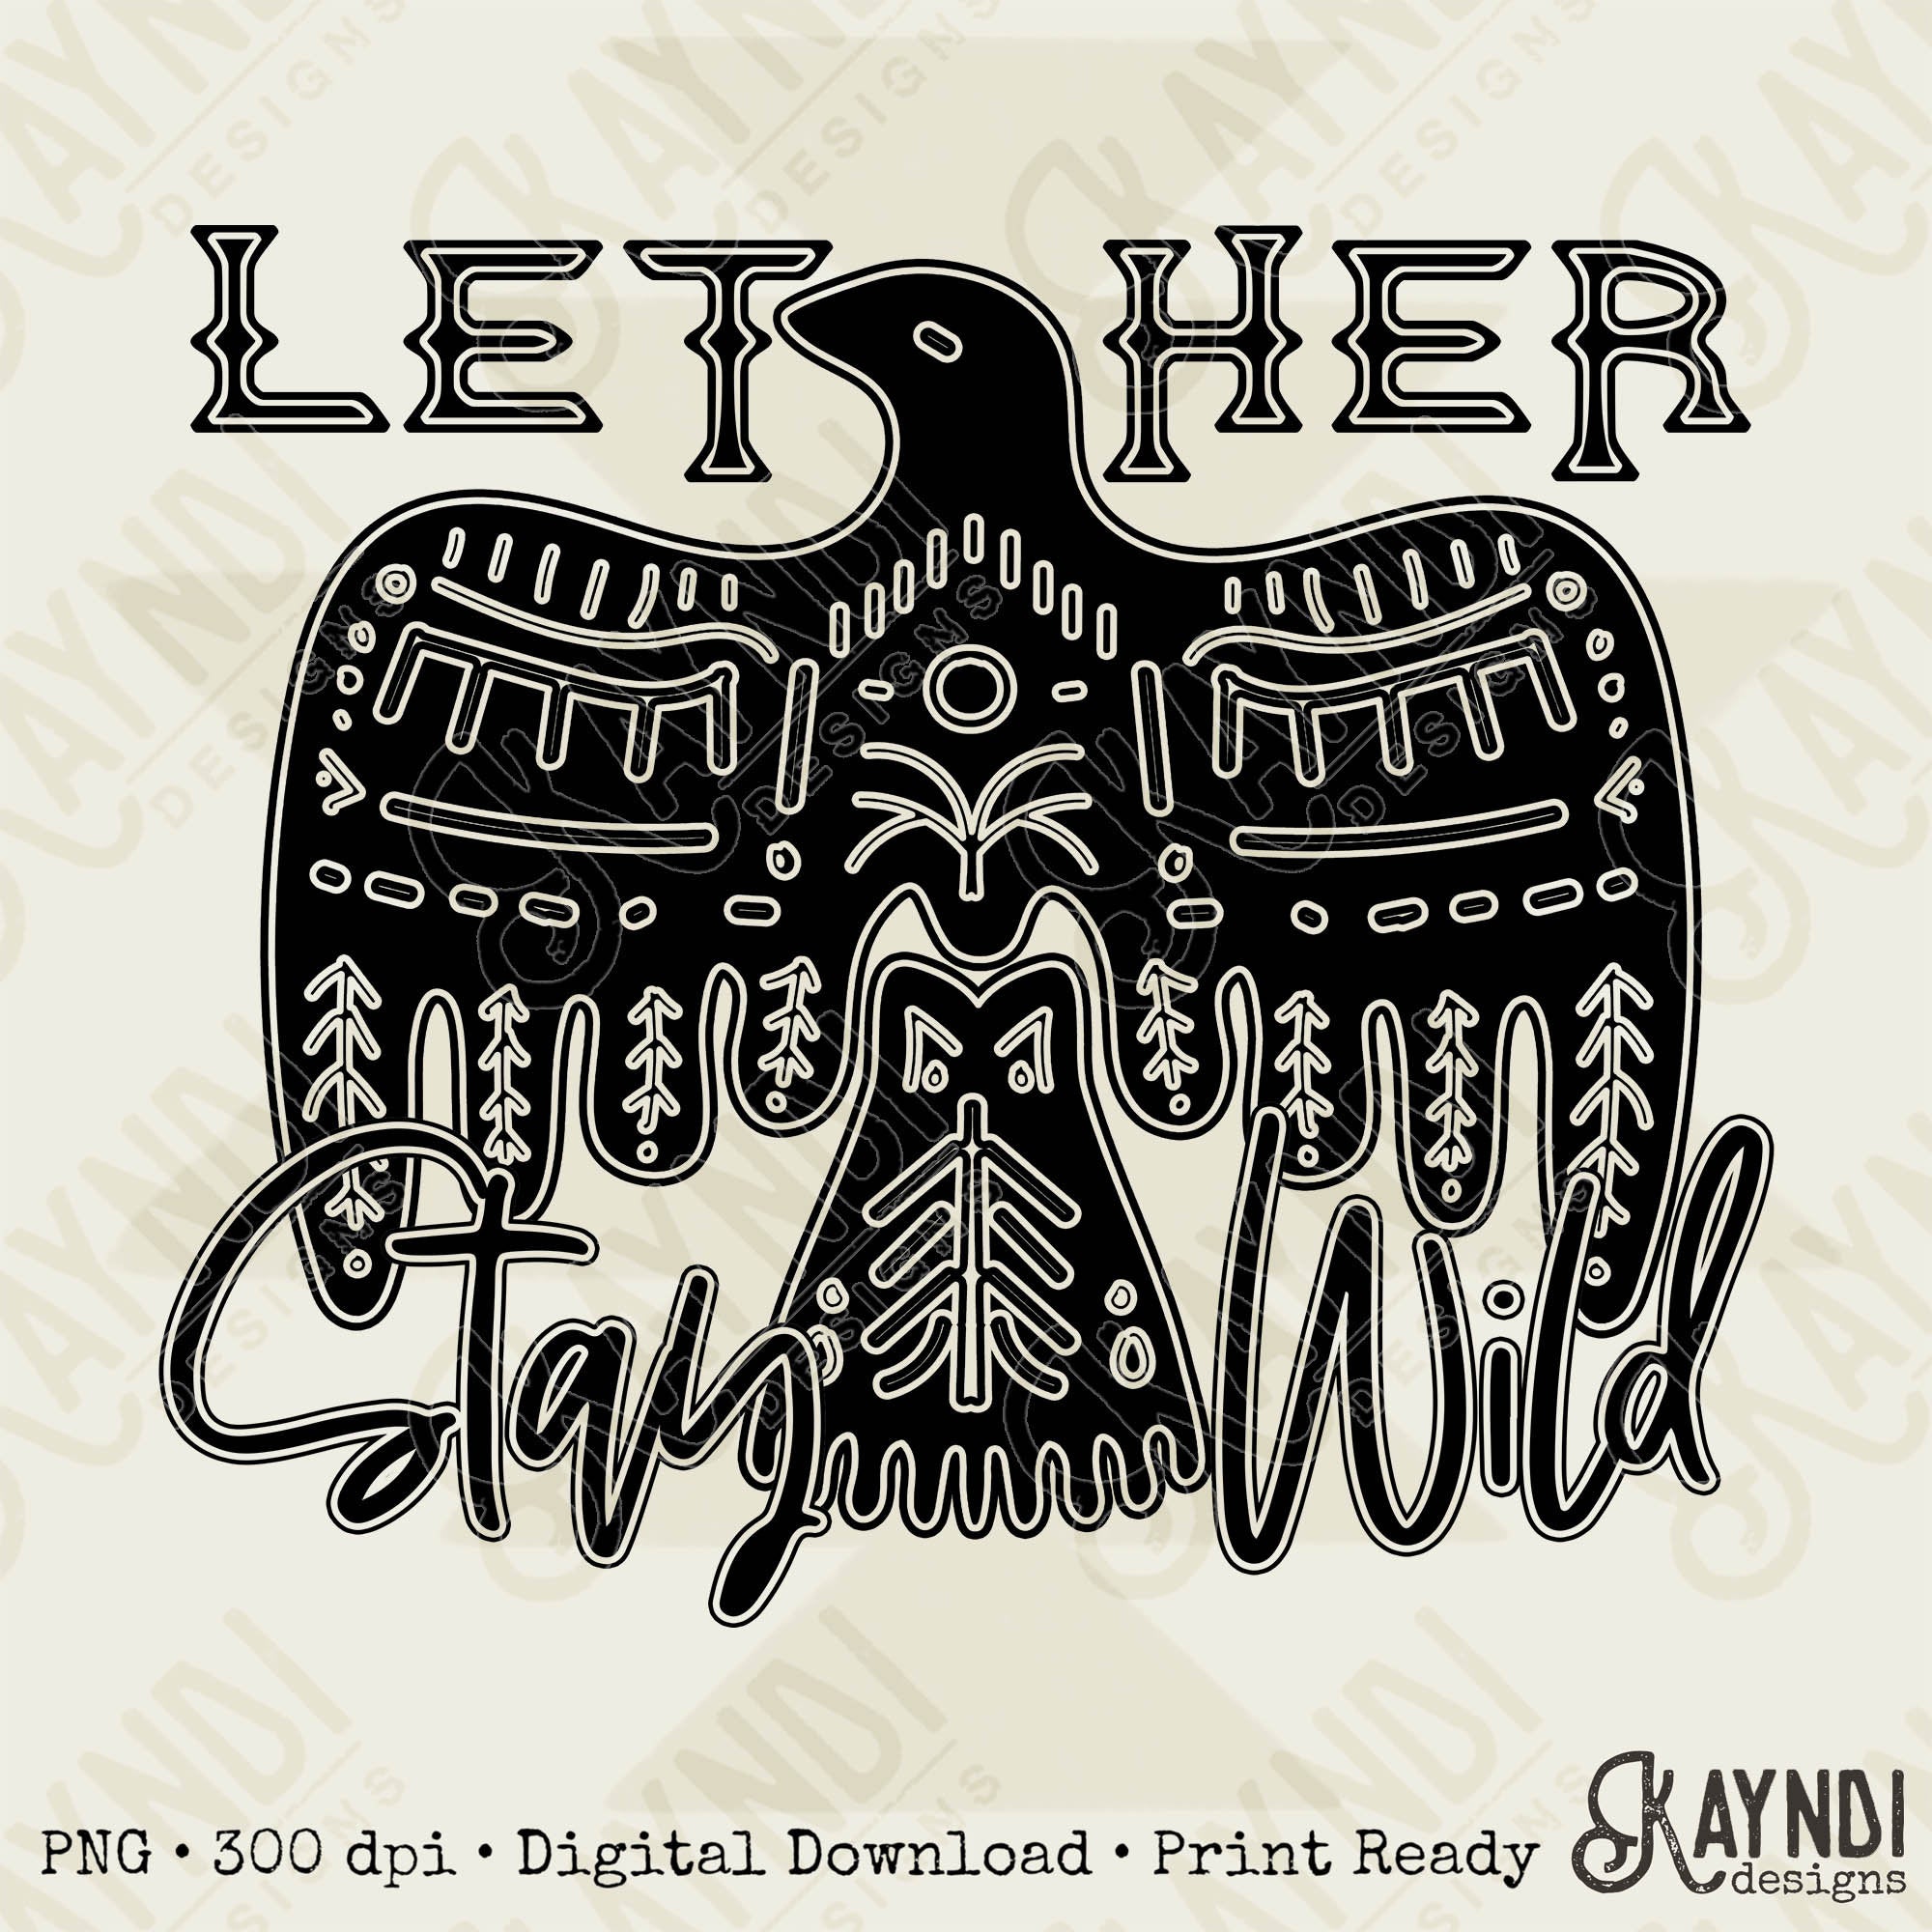 Let Her Stay Wild Single Color Sublimation Design PNG Digital Download Printable